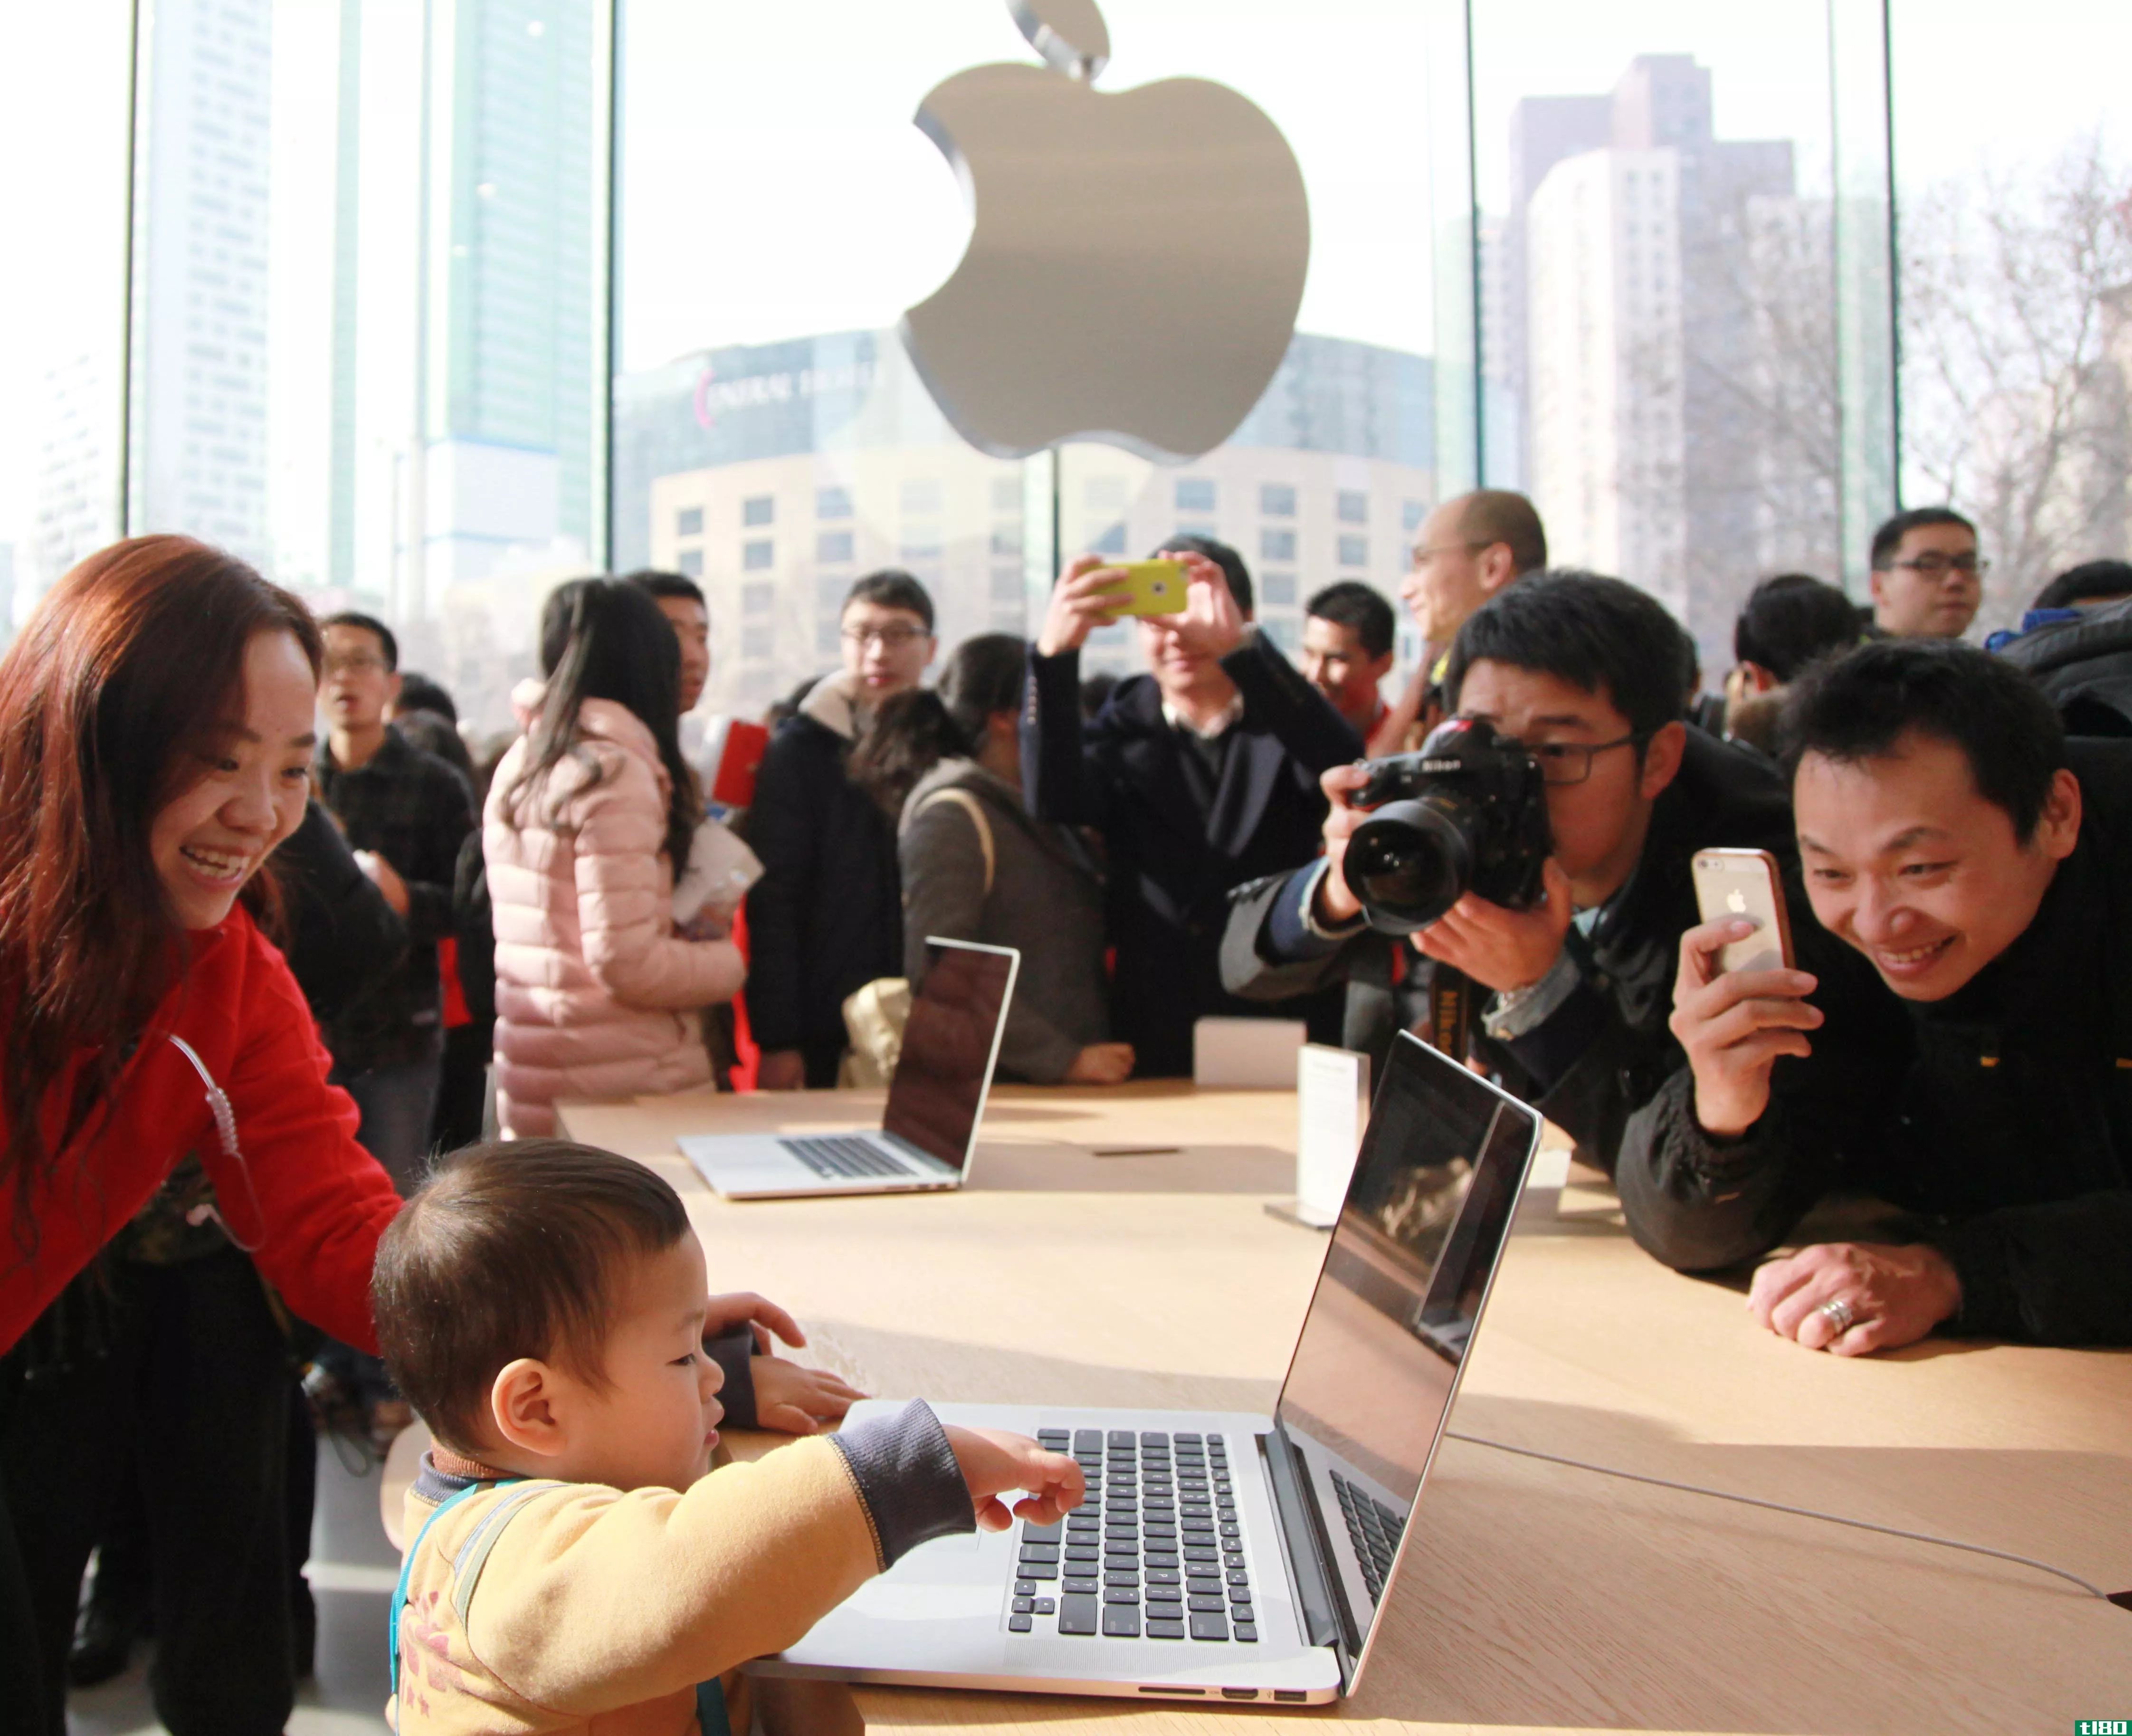 中国将安全审查扩展到苹果和其他公司的电子产品